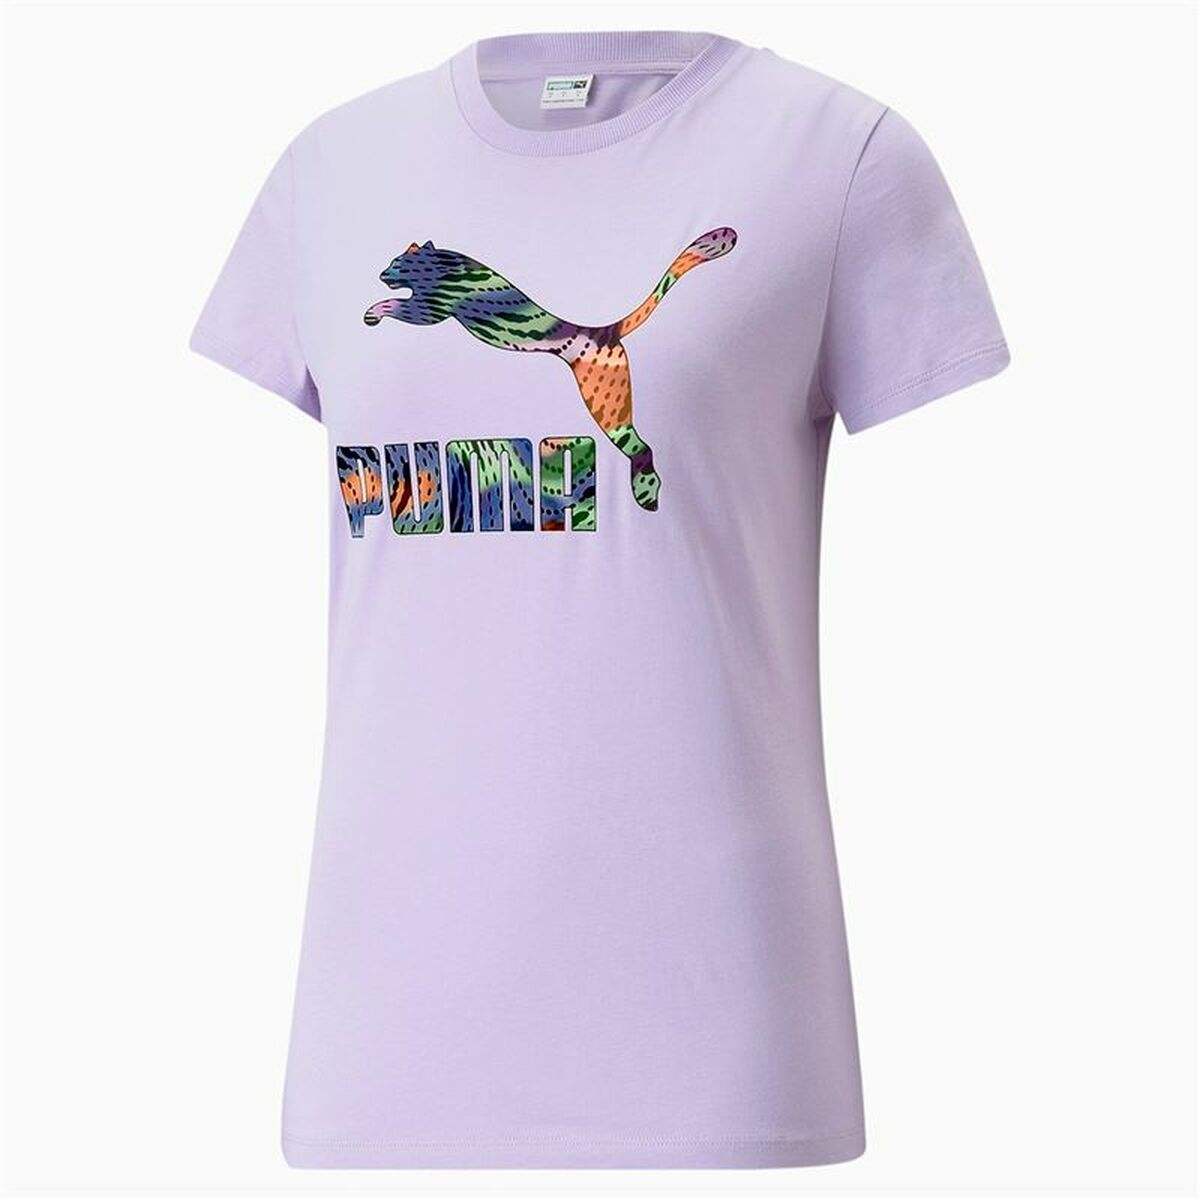 T-shirt à manches courtes femme Puma Classics - Puma - Jardin D'Eyden - jardindeyden.fr